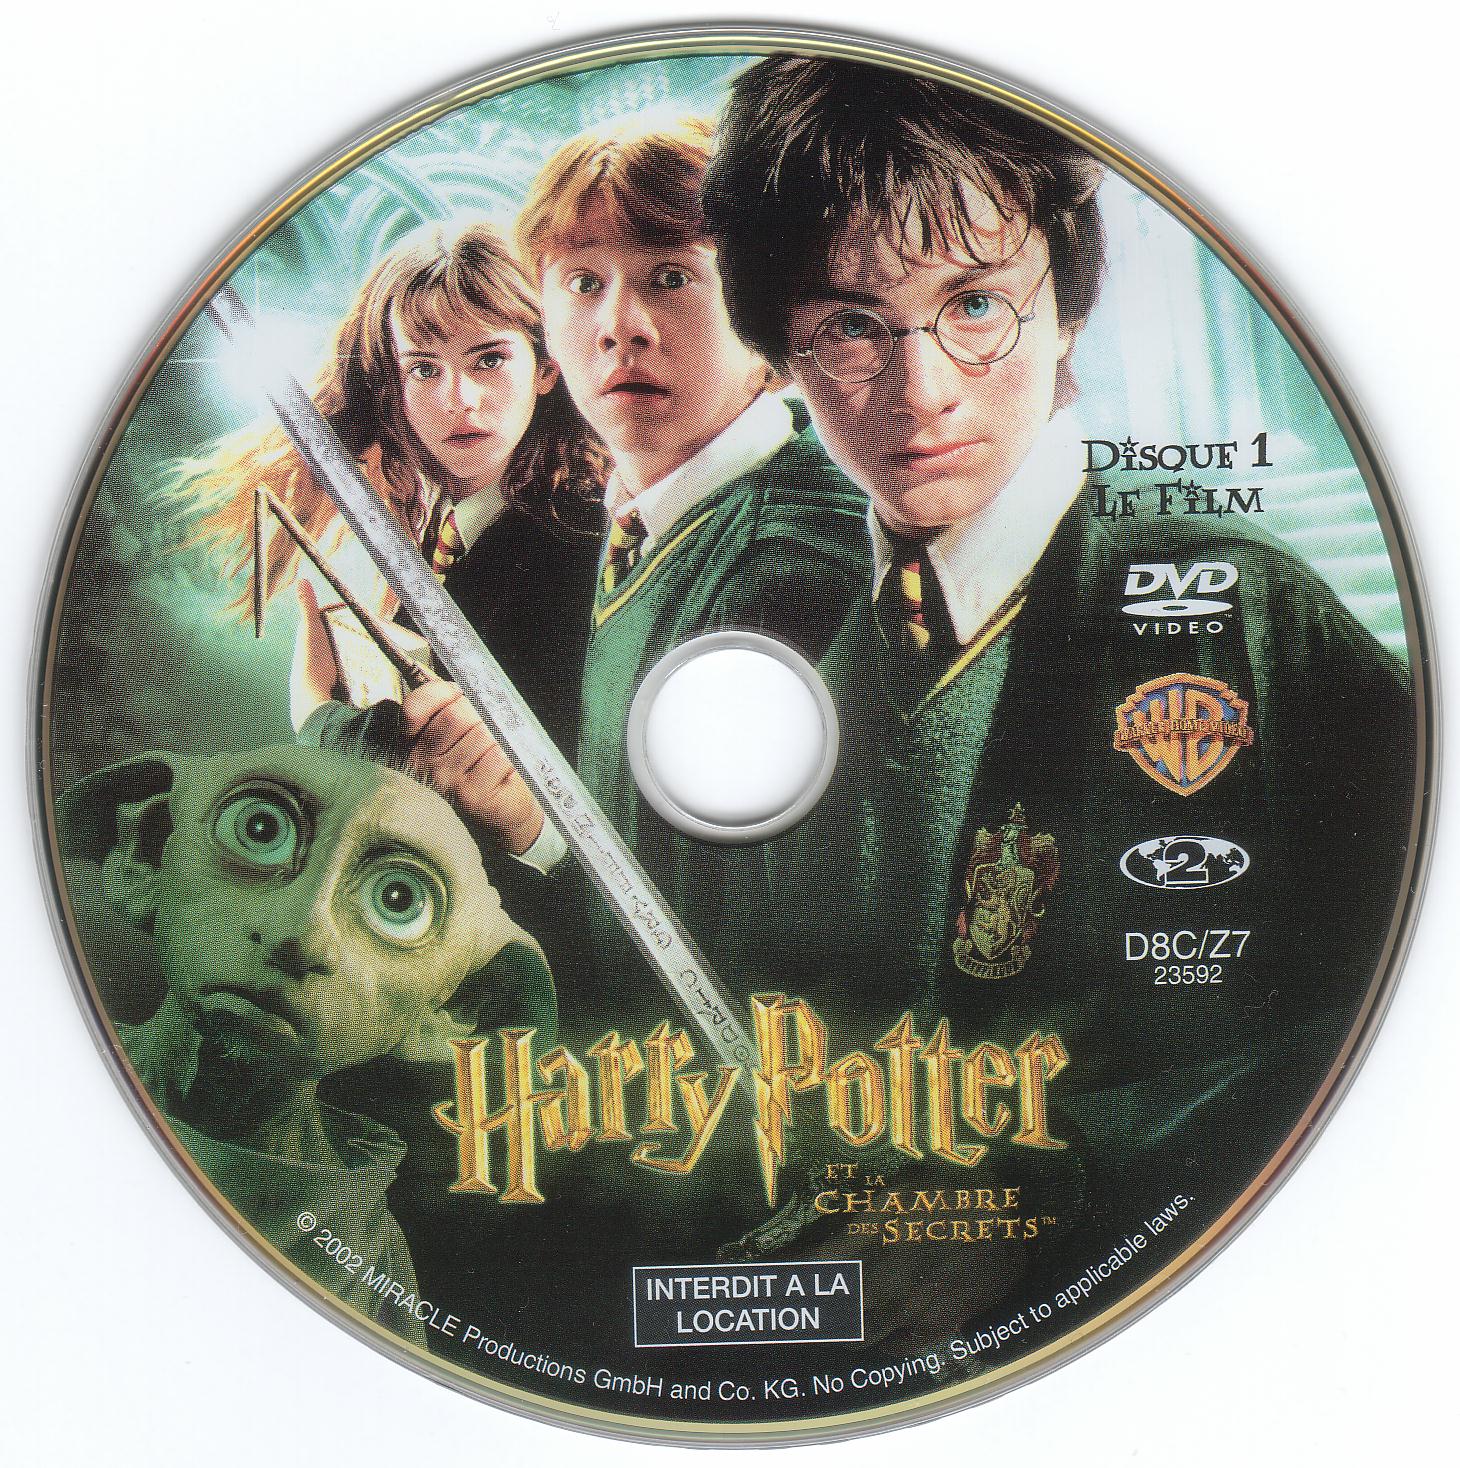 Sticker de Harry Potter et la chambre des secrets - Cinéma Passion